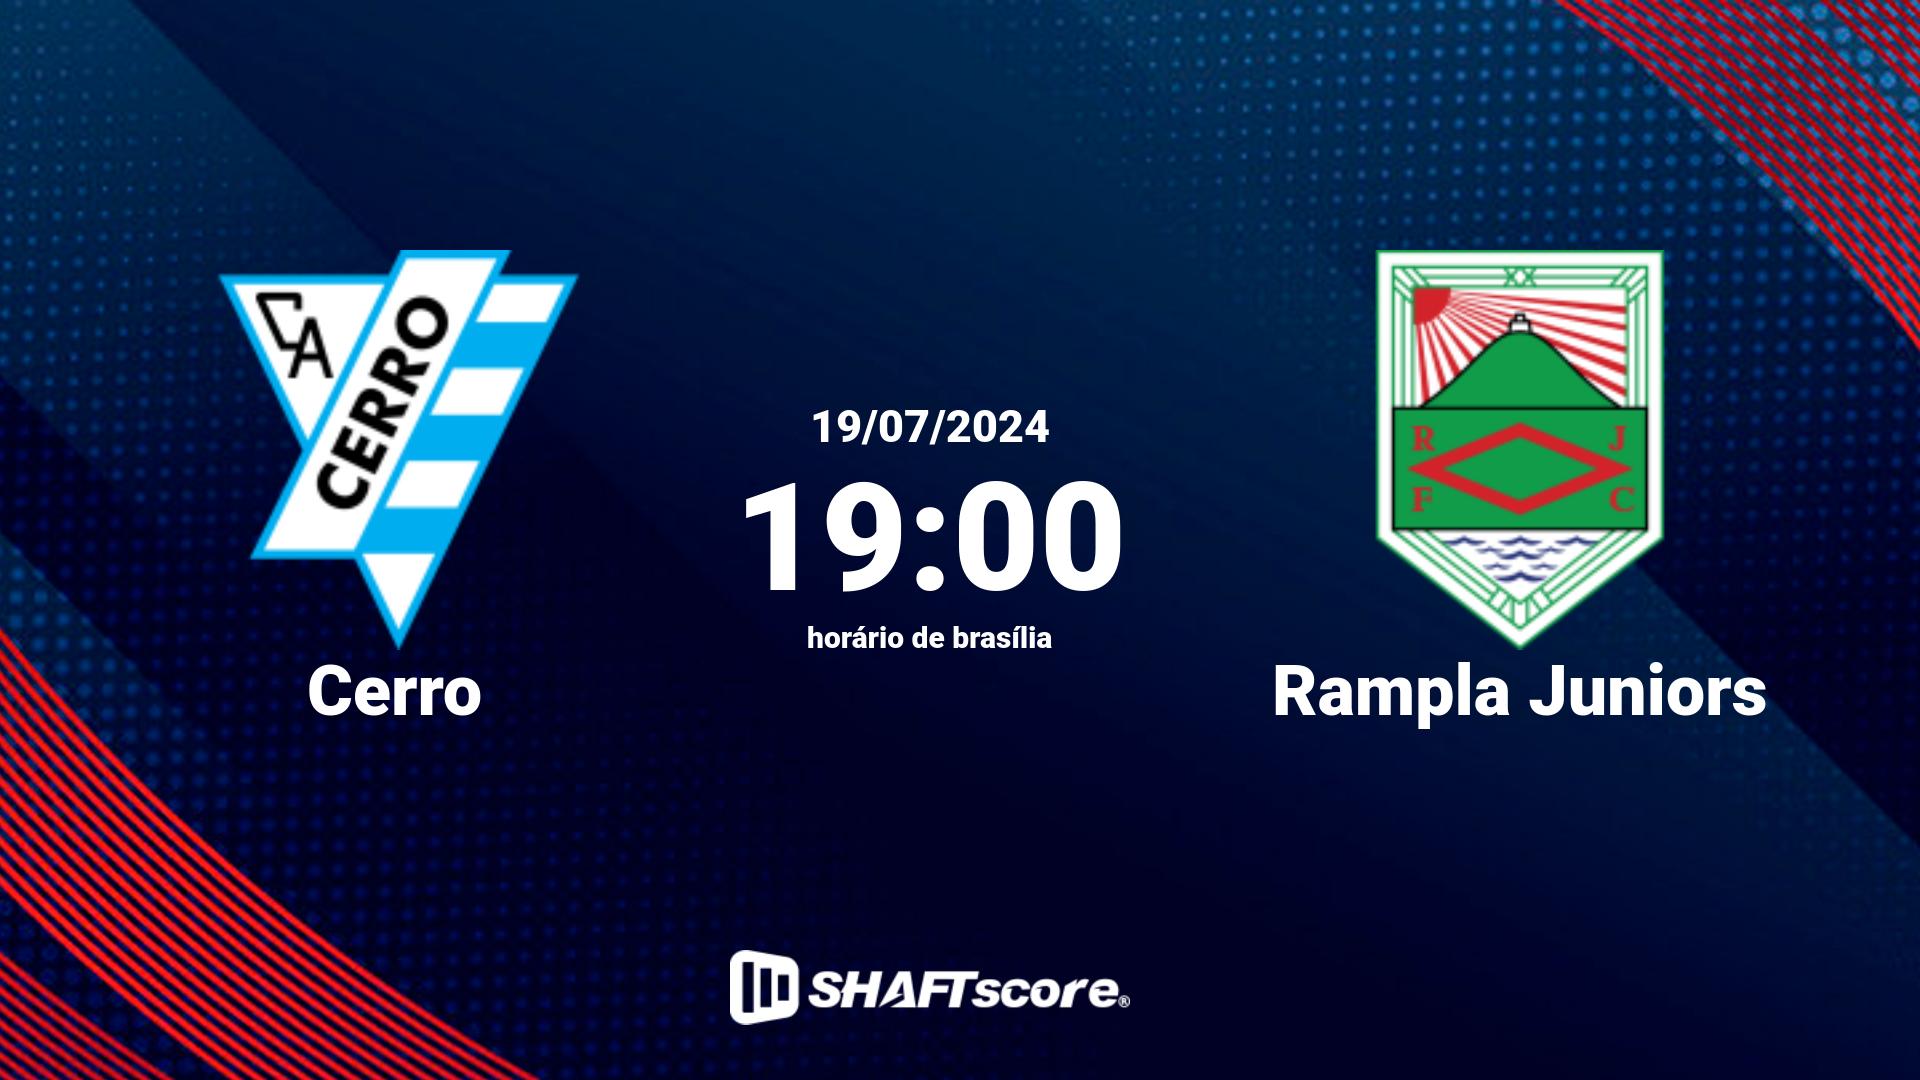 Estatísticas do jogo Cerro vs Rampla Juniors 19.07 19:00